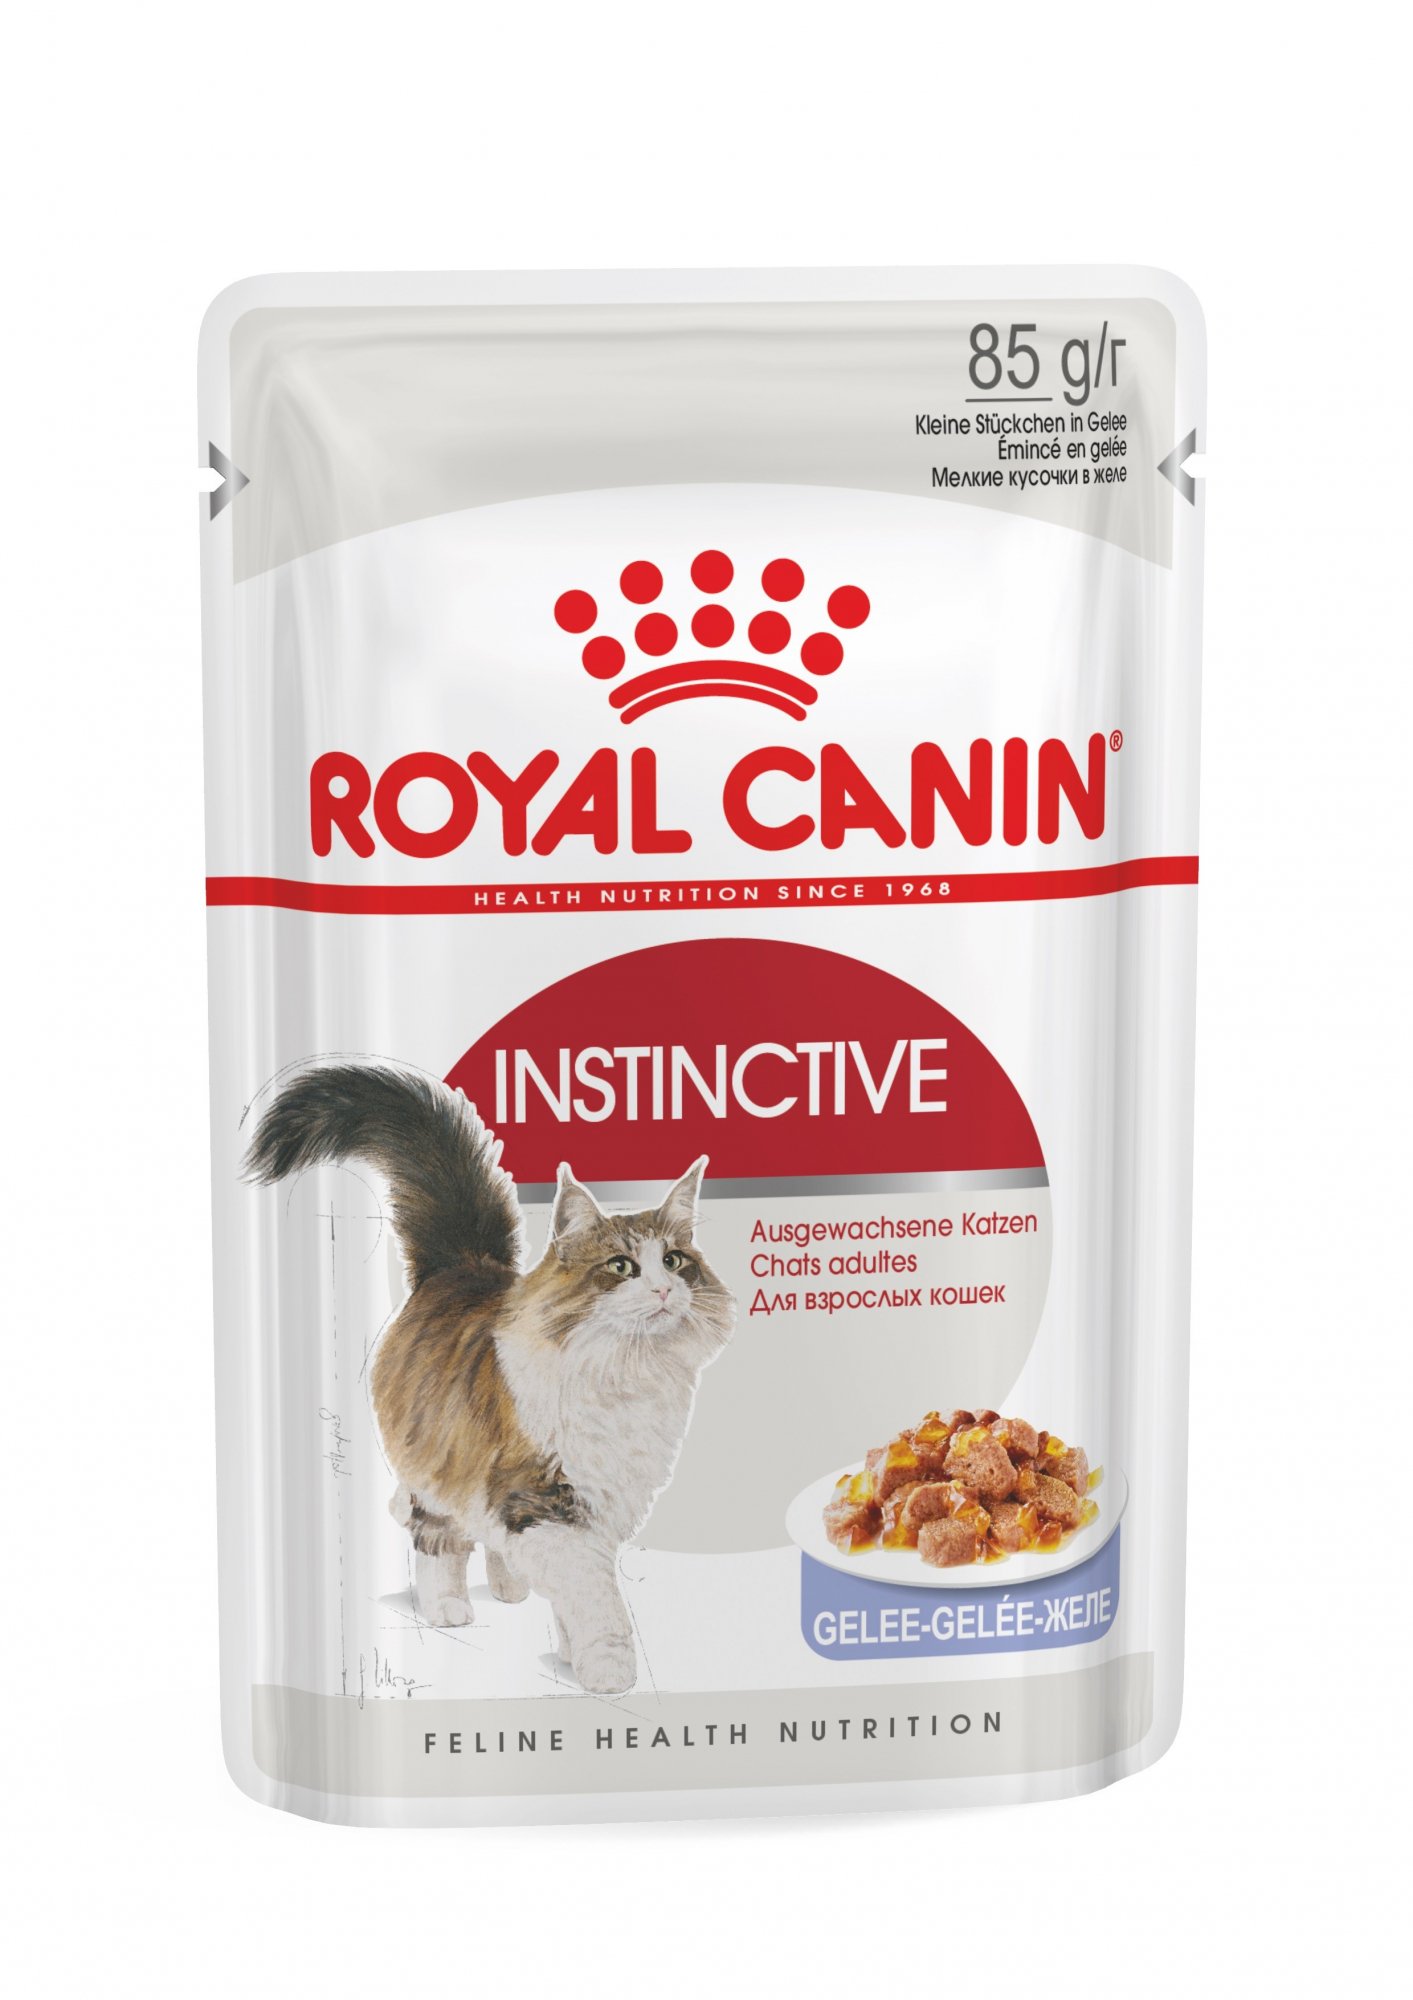 Royal Canin Instinctive Pâtée in Gelée für Katzen